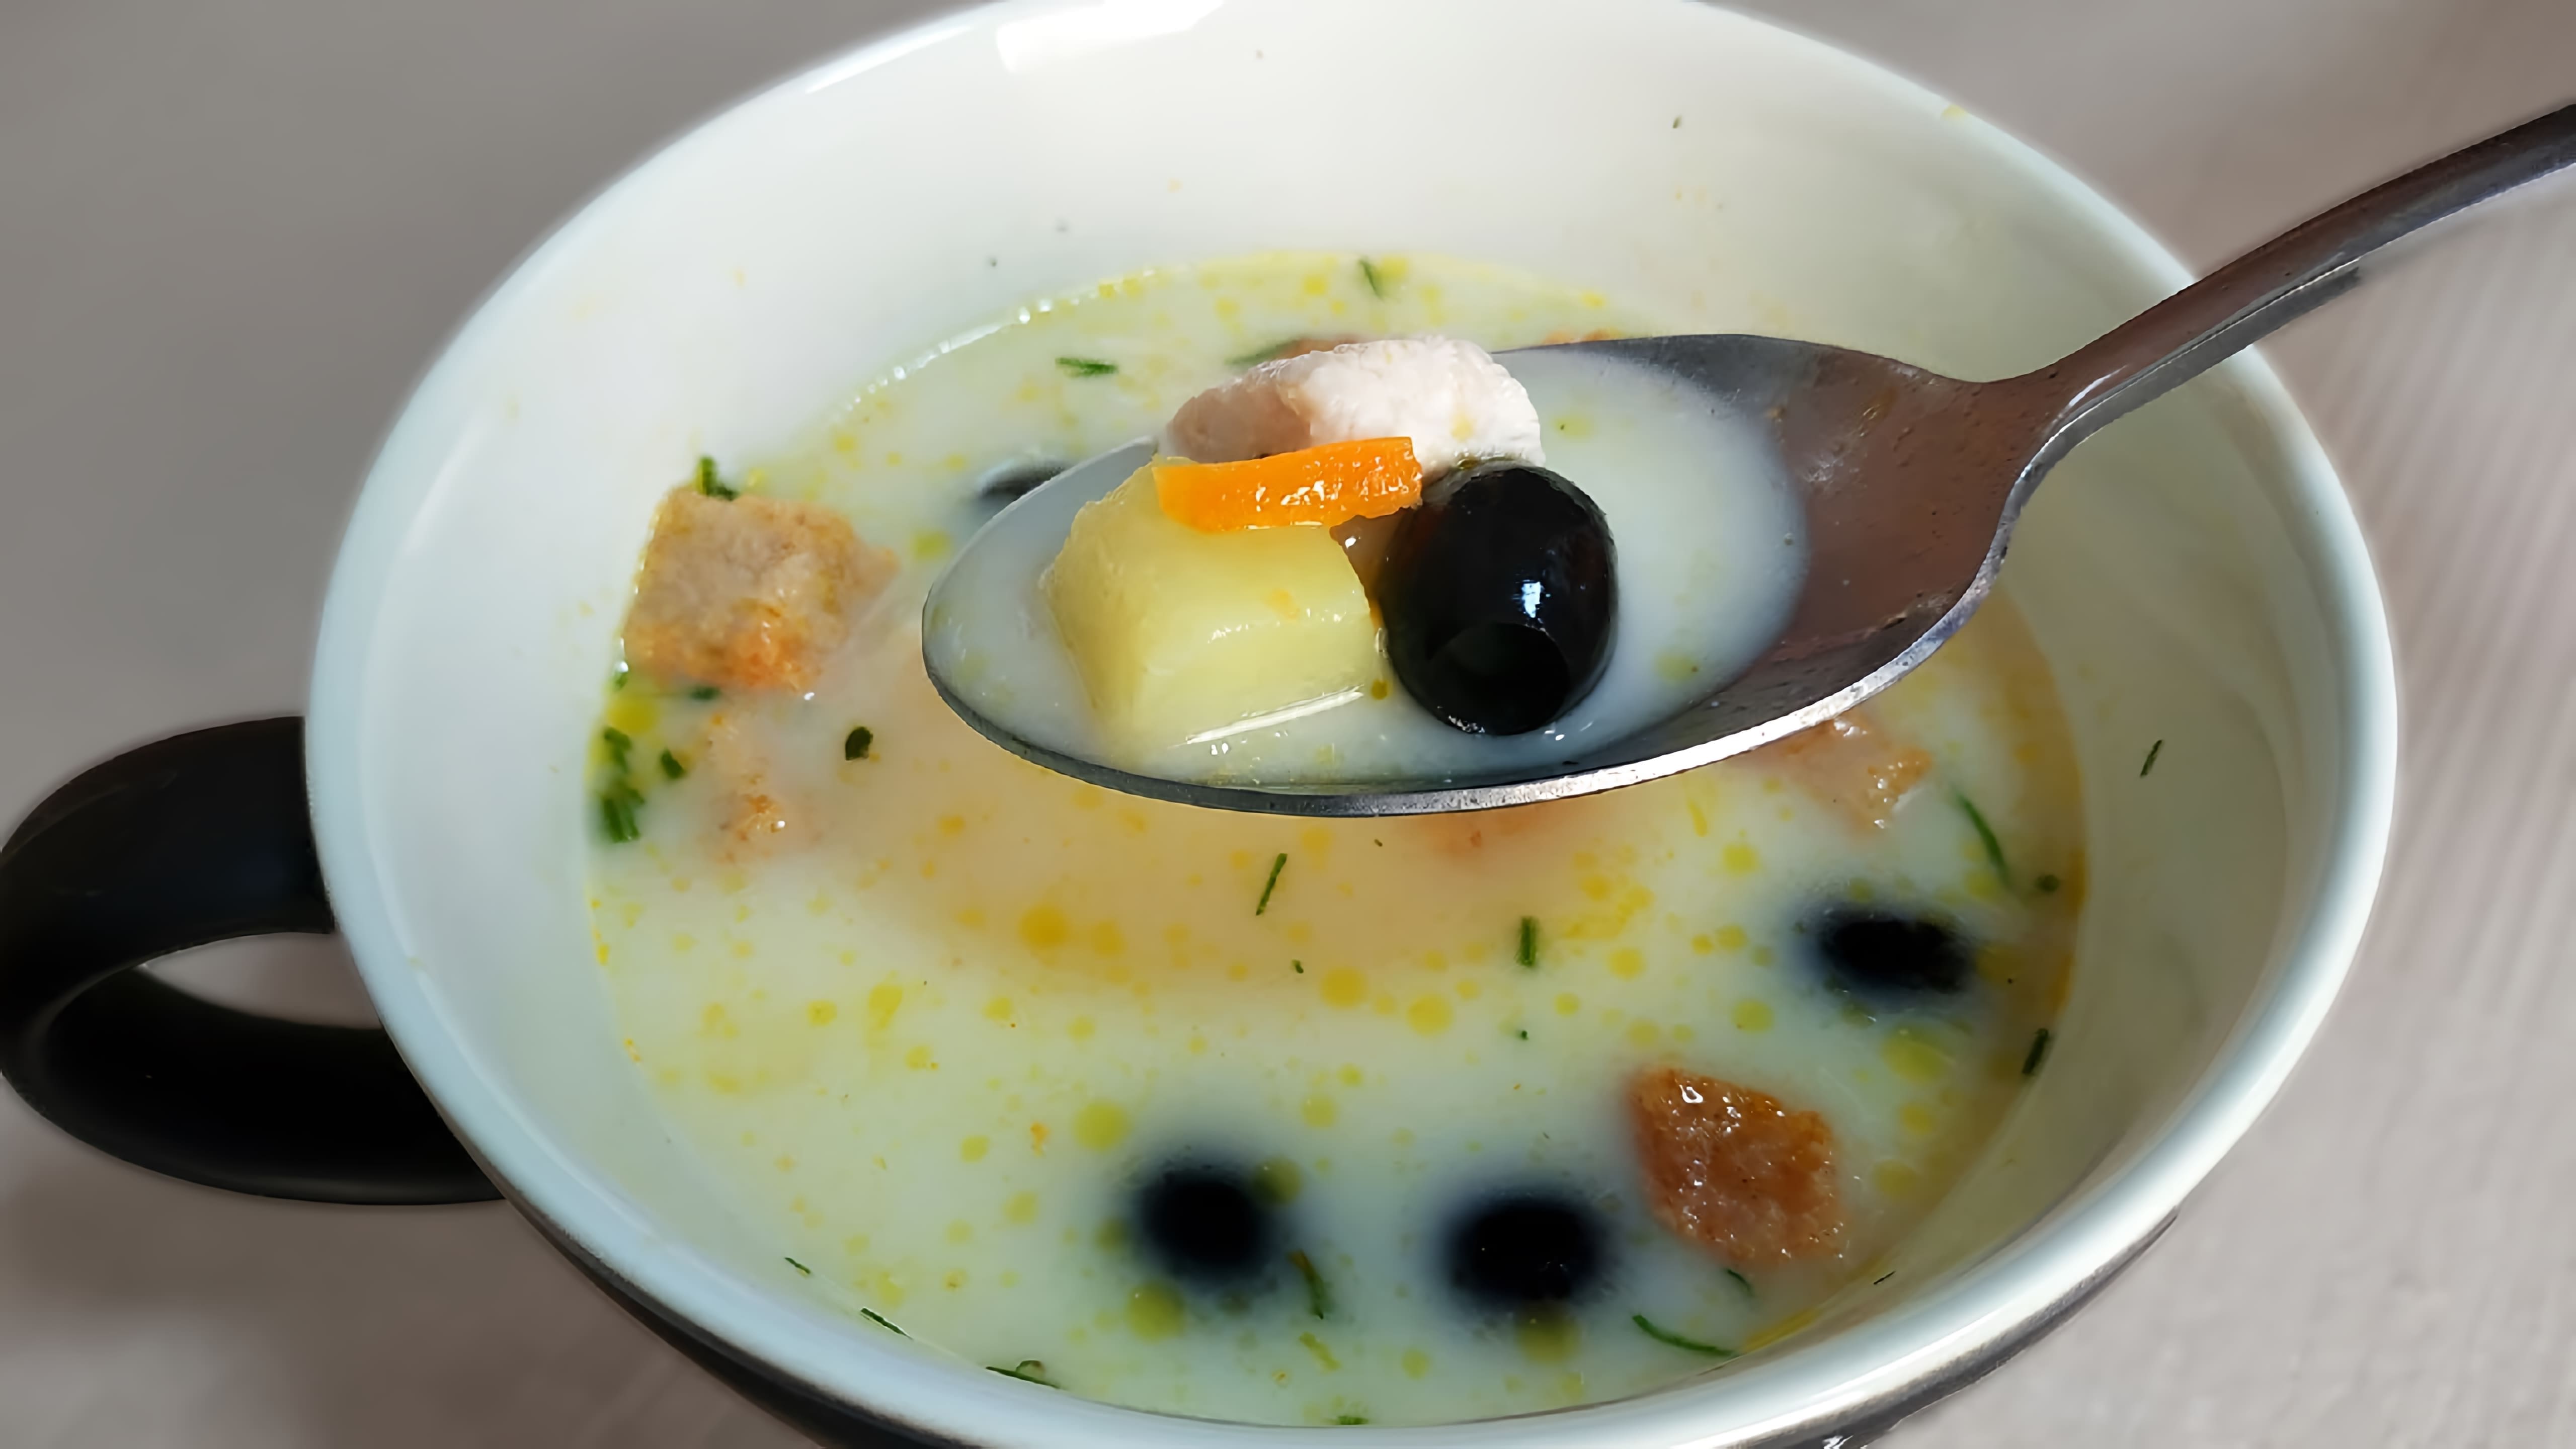 В этом видео демонстрируется рецепт приготовления сырного супа с плавленным сыром и курицей